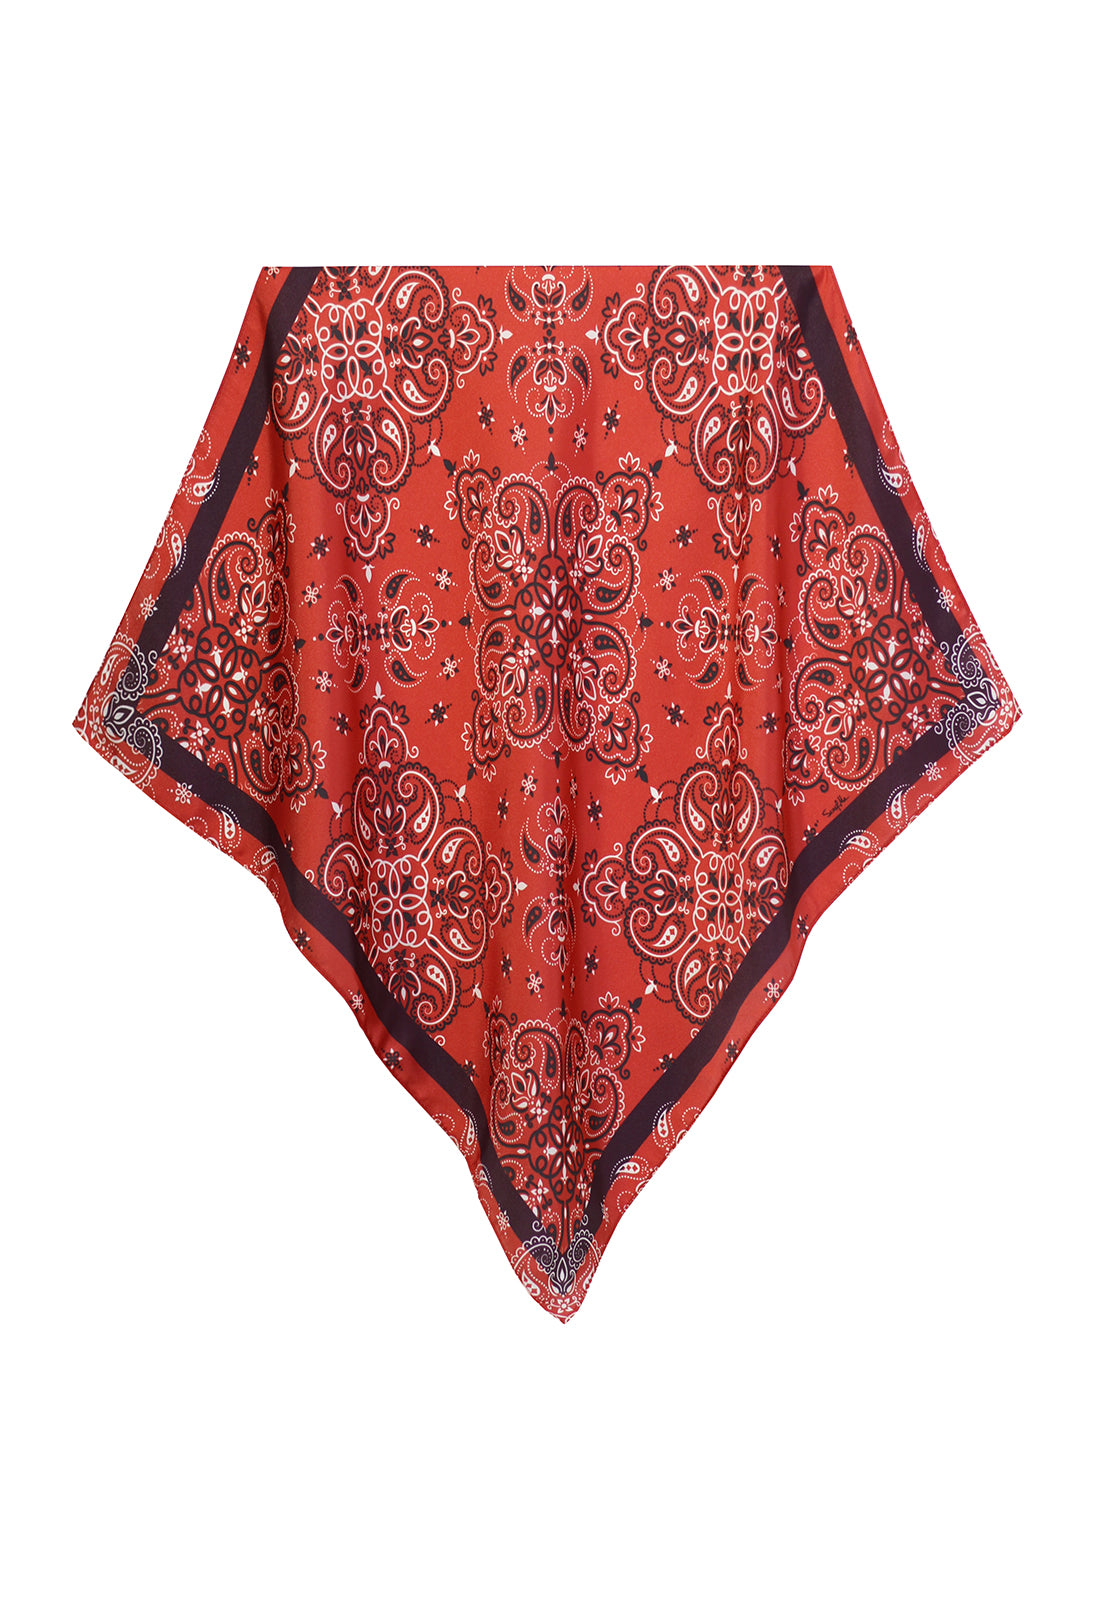 lenço bandana red em cetim poliéster 50x50cm para cabeça, pescoço, bolsas e cabelos